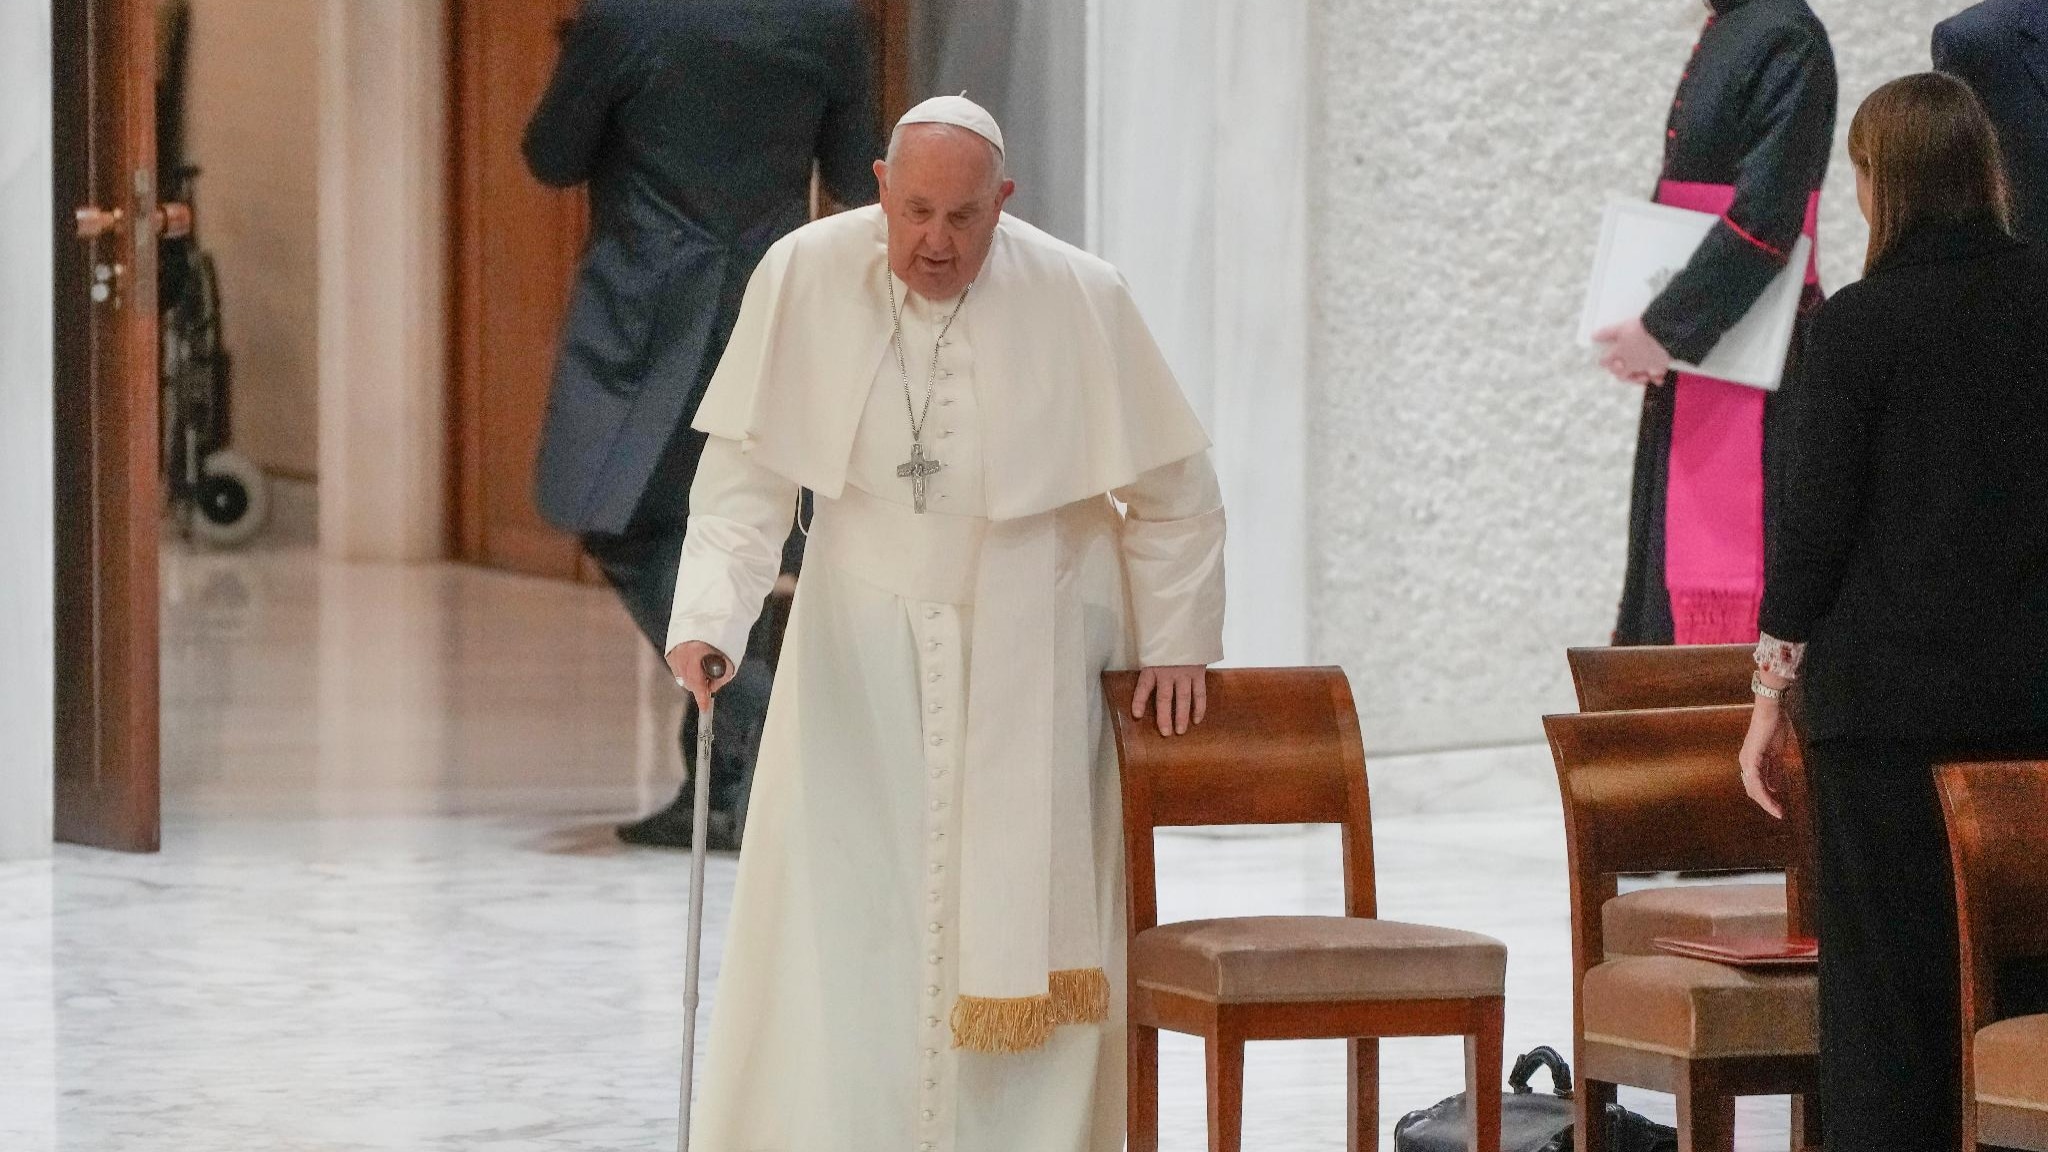 Benedizione alle coppie gay, la levata di scudi contro il Papa. Zuppi chiarisce: "Non è all'unione"